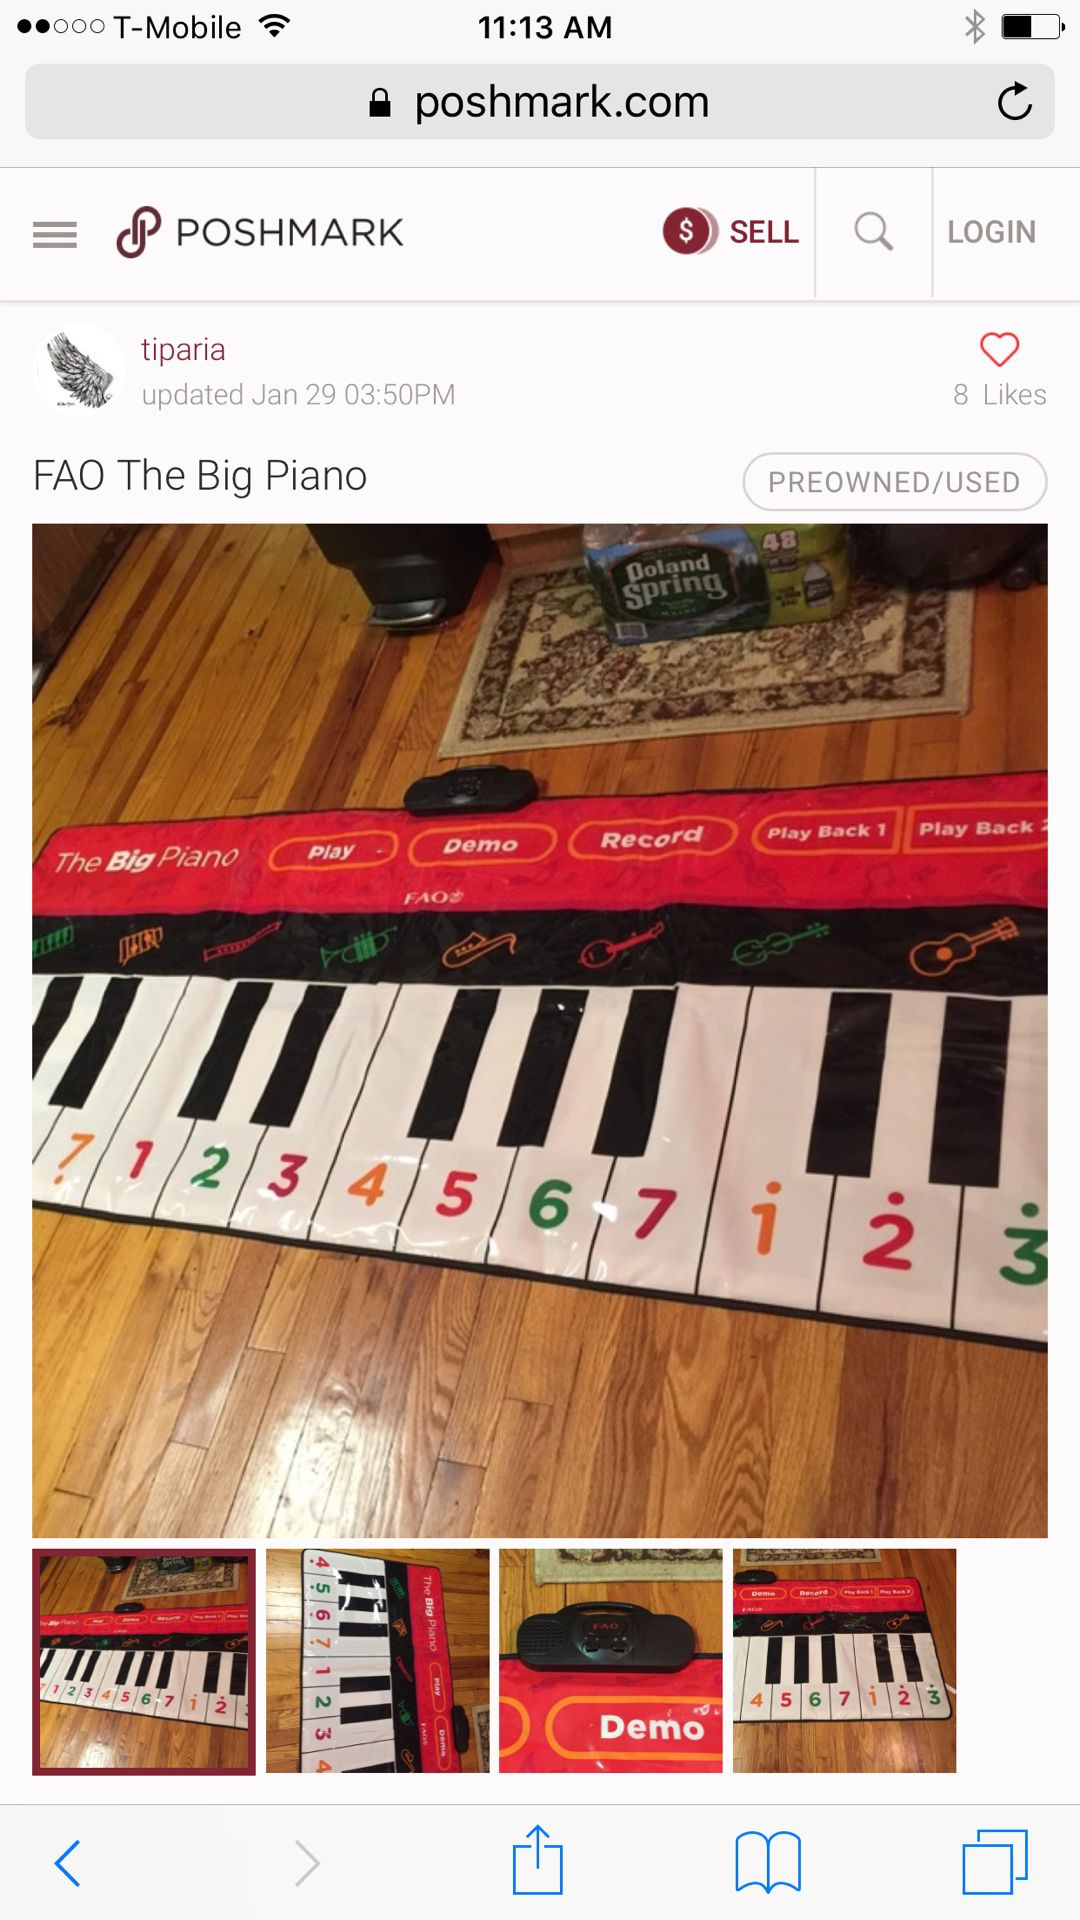 The big piano